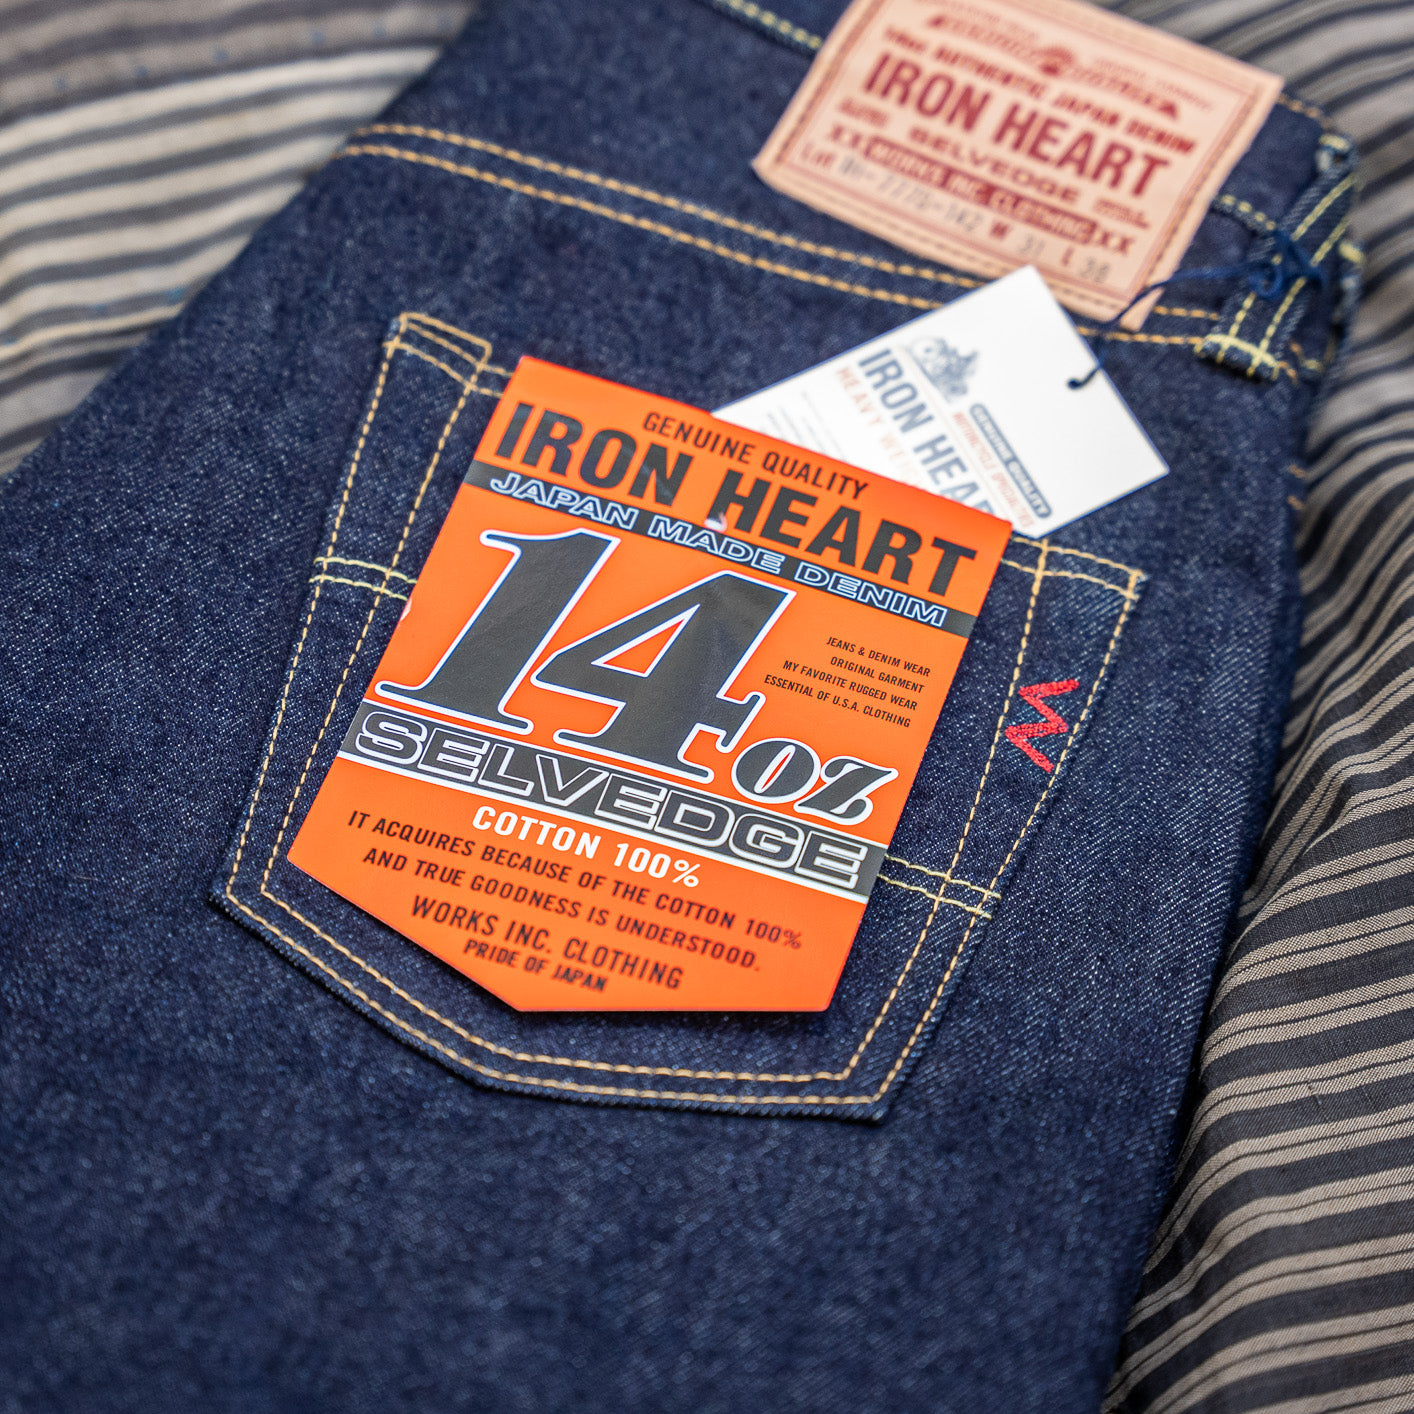 https://statement-store.com/cdn/shop/products/iron-heart-777-jeans-14oz-denim-selvedge-statement-statementstore-munich-c.jpg?v=1669650911